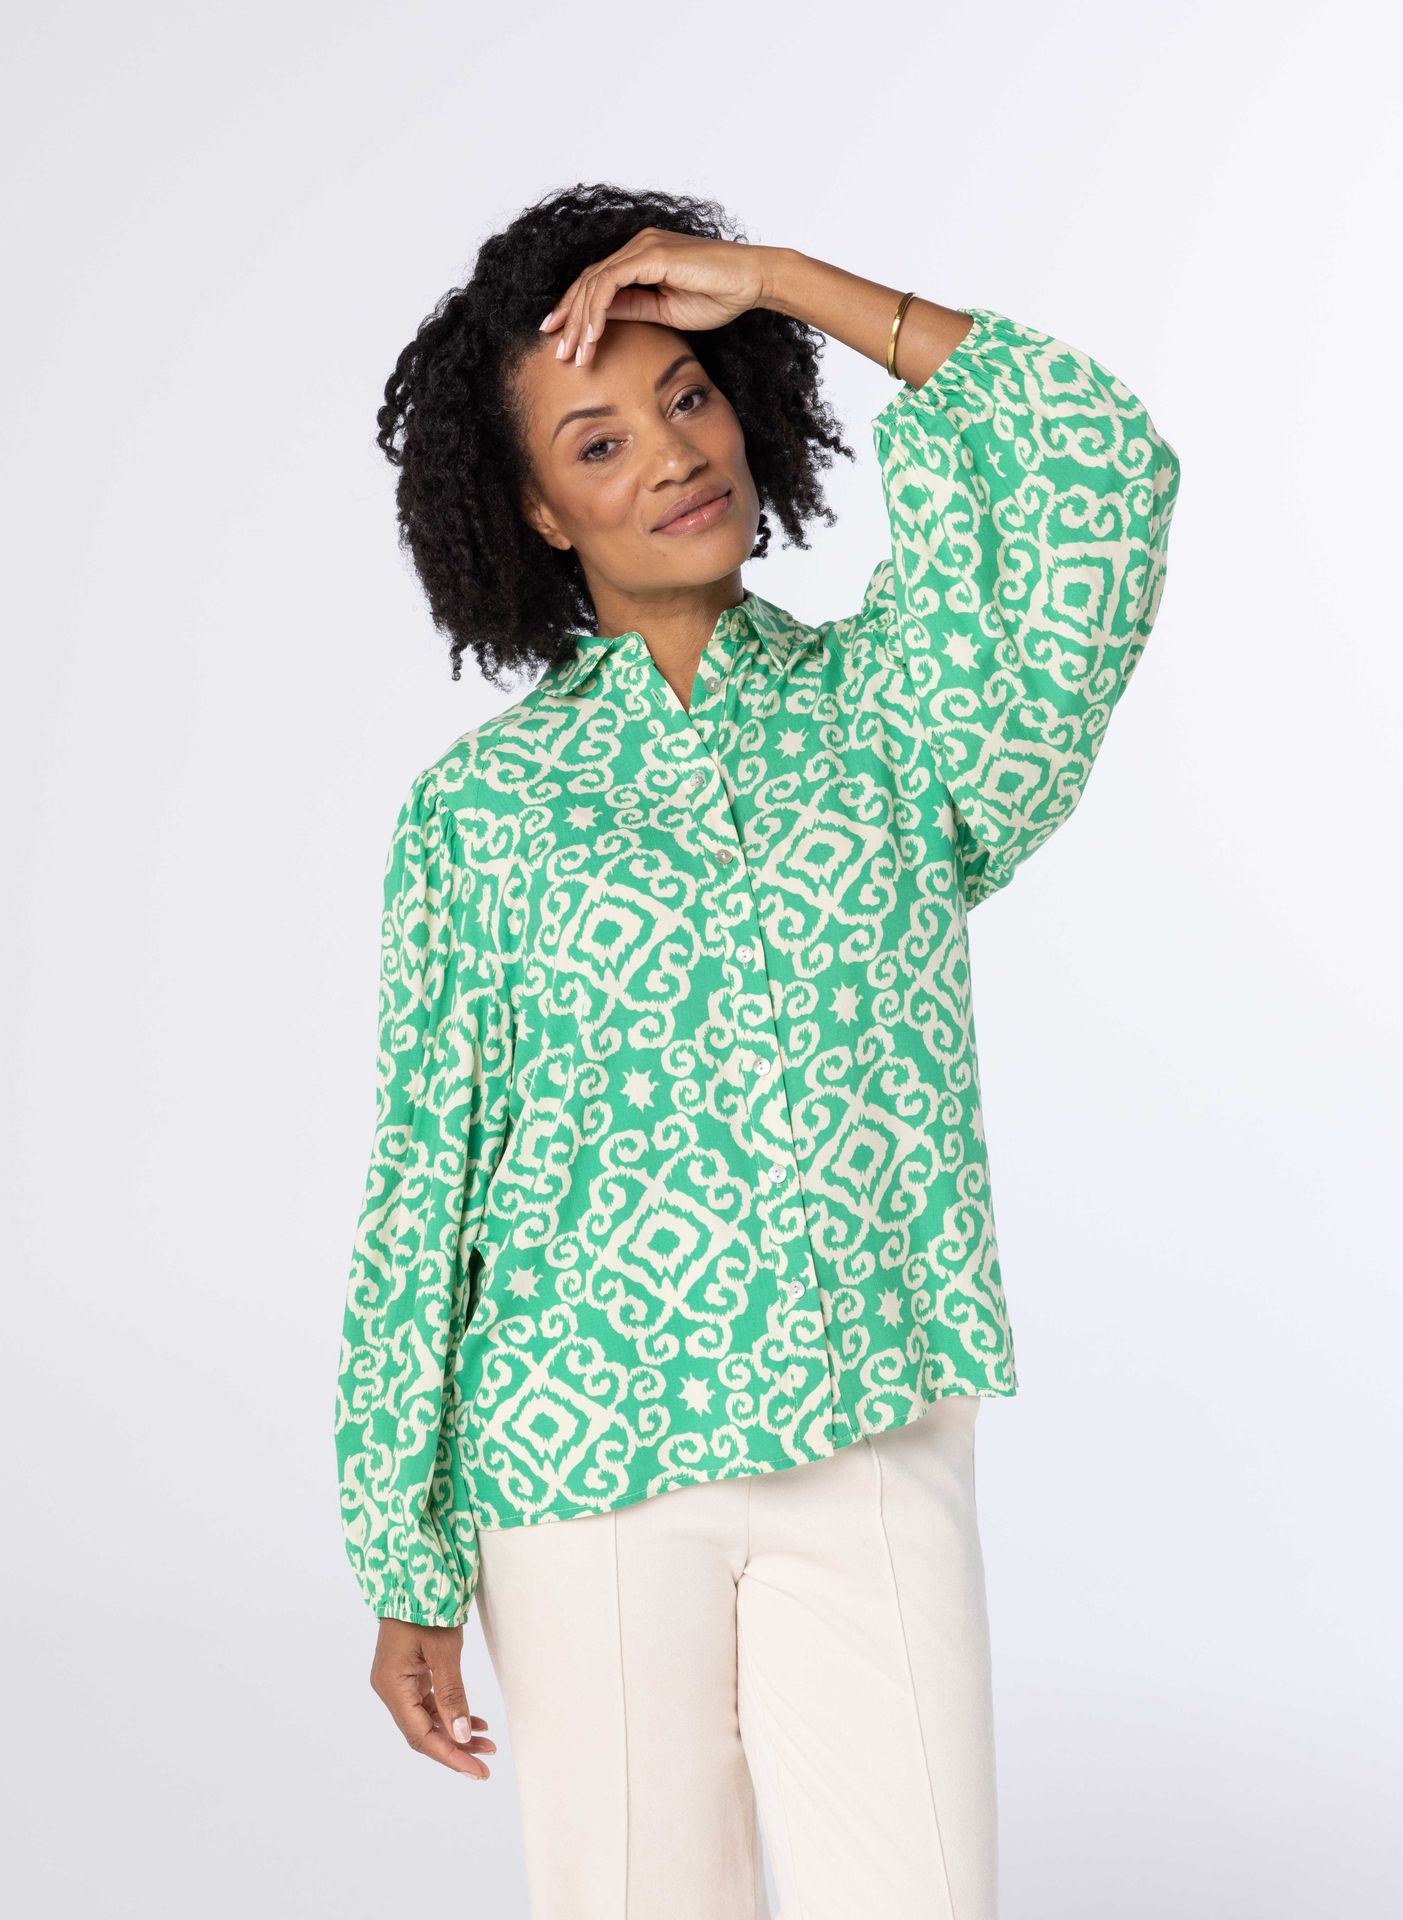 Norah Groen beige blouse met print green/ecru 213862-541